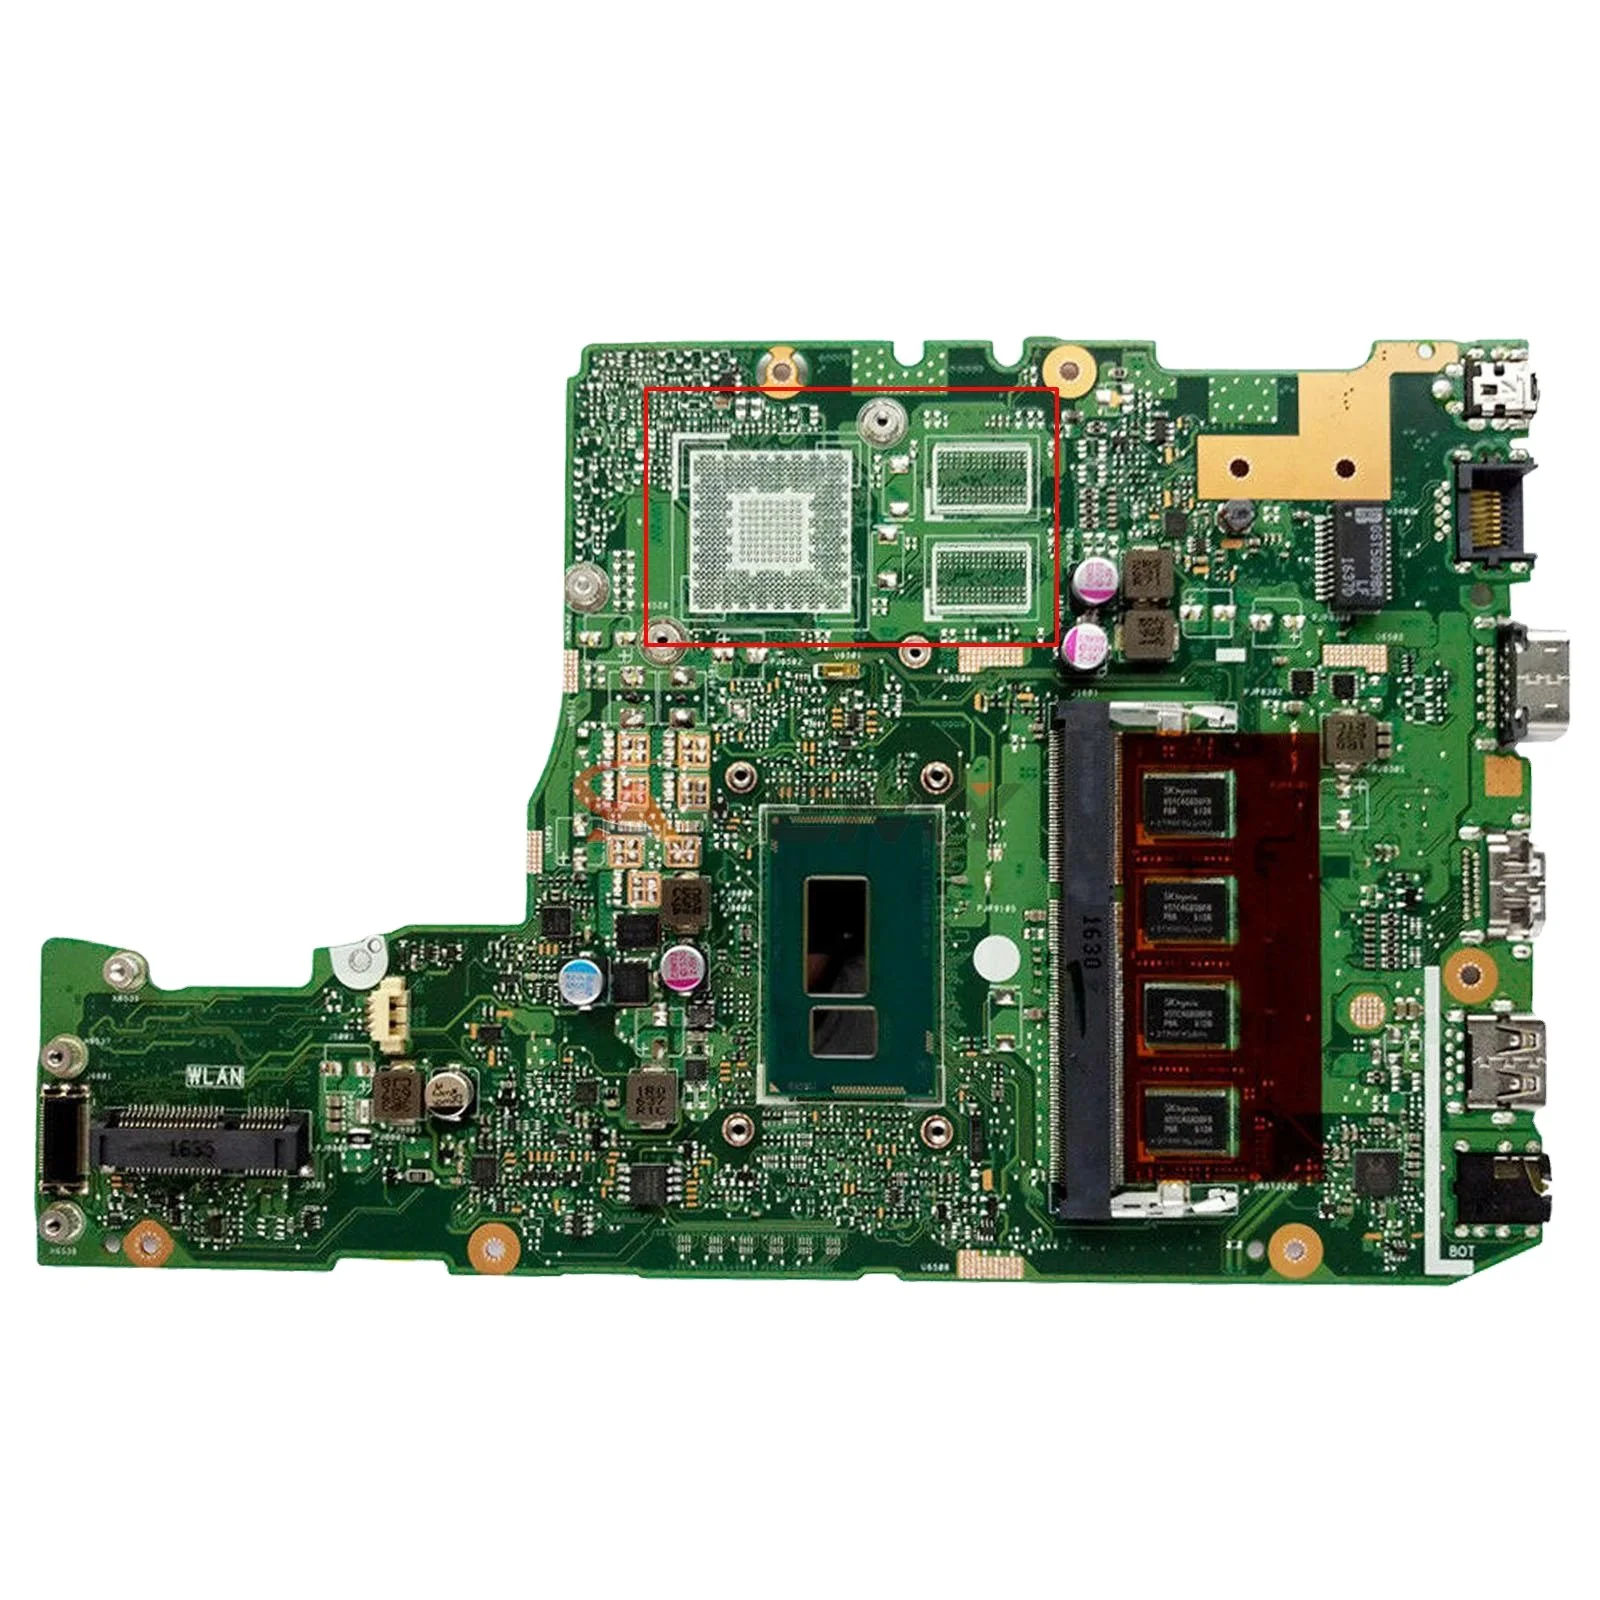 

X302L Notebook Mainboard For ASUS X302LA X302LA-LJ X302LJ Laptop Motherboard W/I3-5005U I5-5200U I7-5500U 4GB-RAM